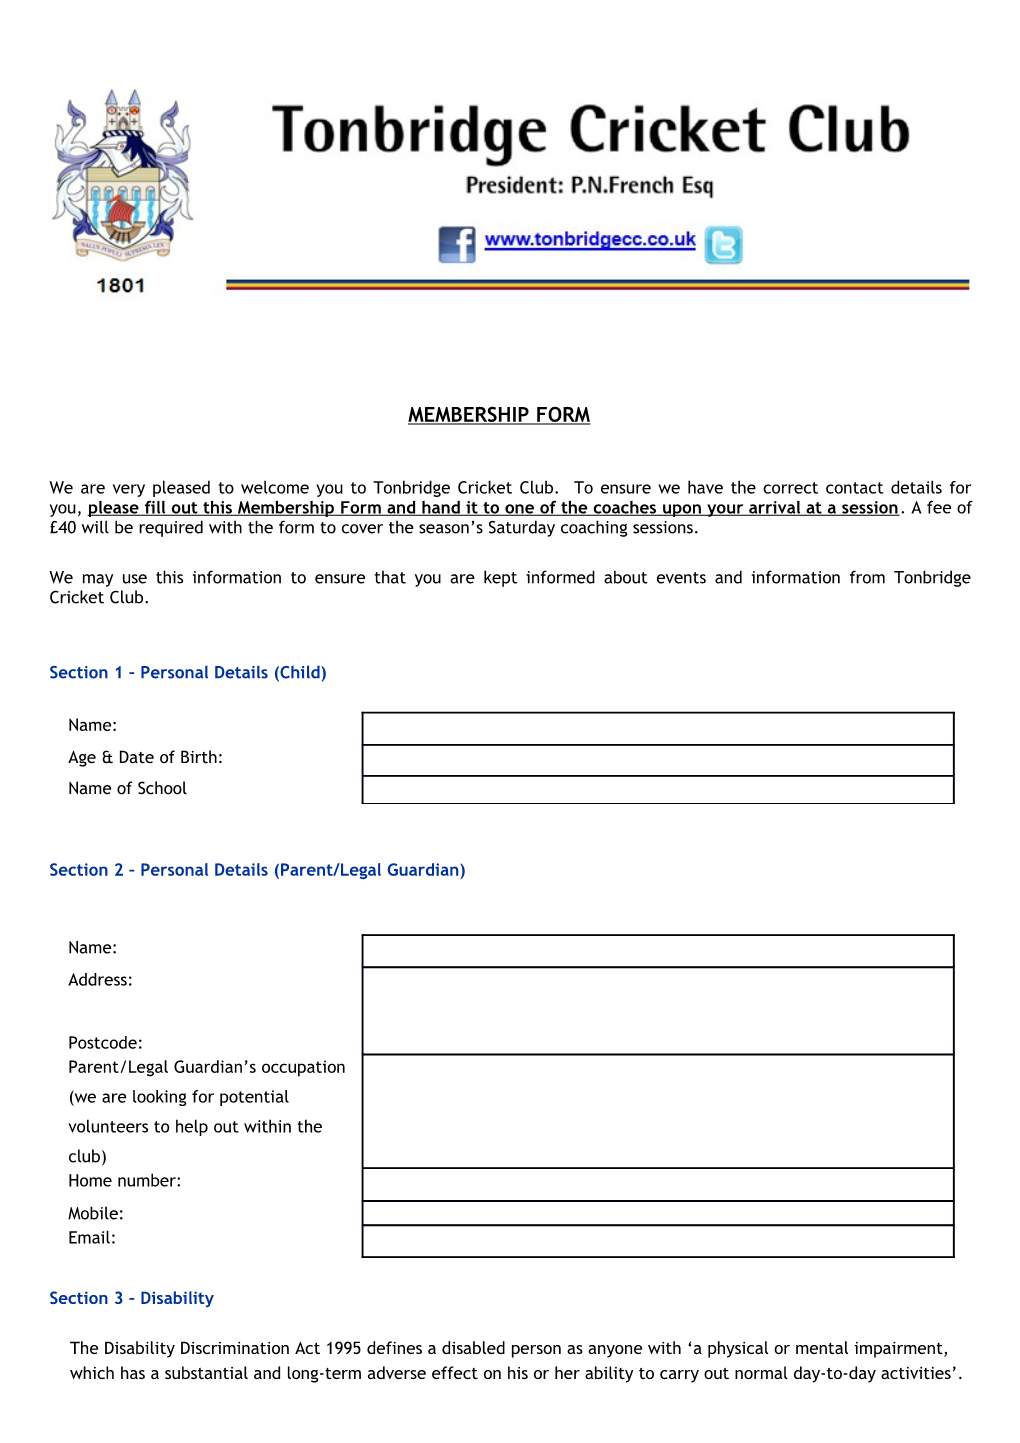 Tonbridge Cricket Club - Registration Form